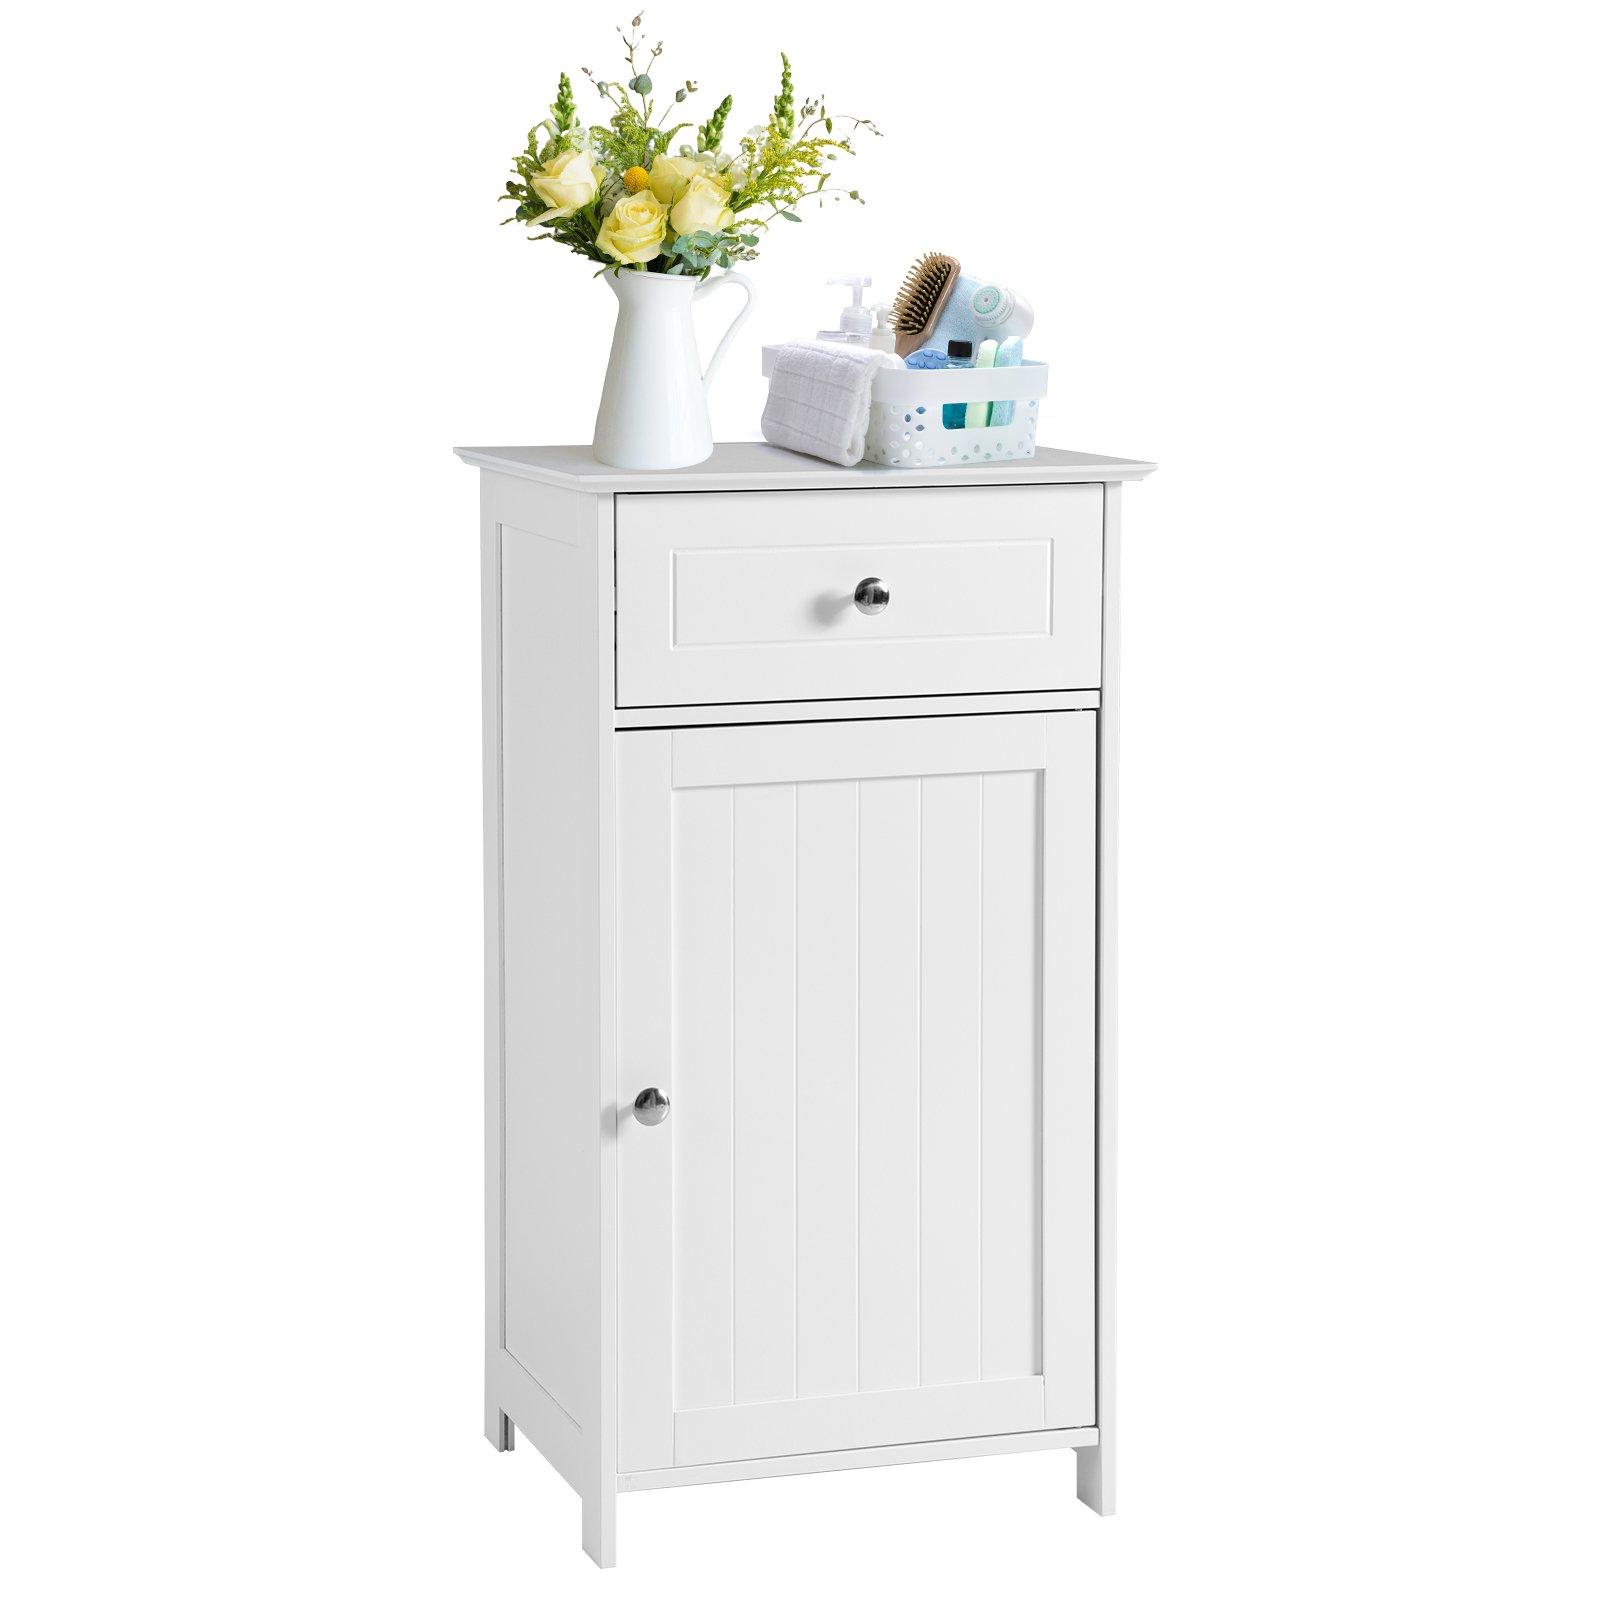 Bathroom Floor Cabinet Wood Storage Organizer Adjustable Shelves W/ Drawer Door